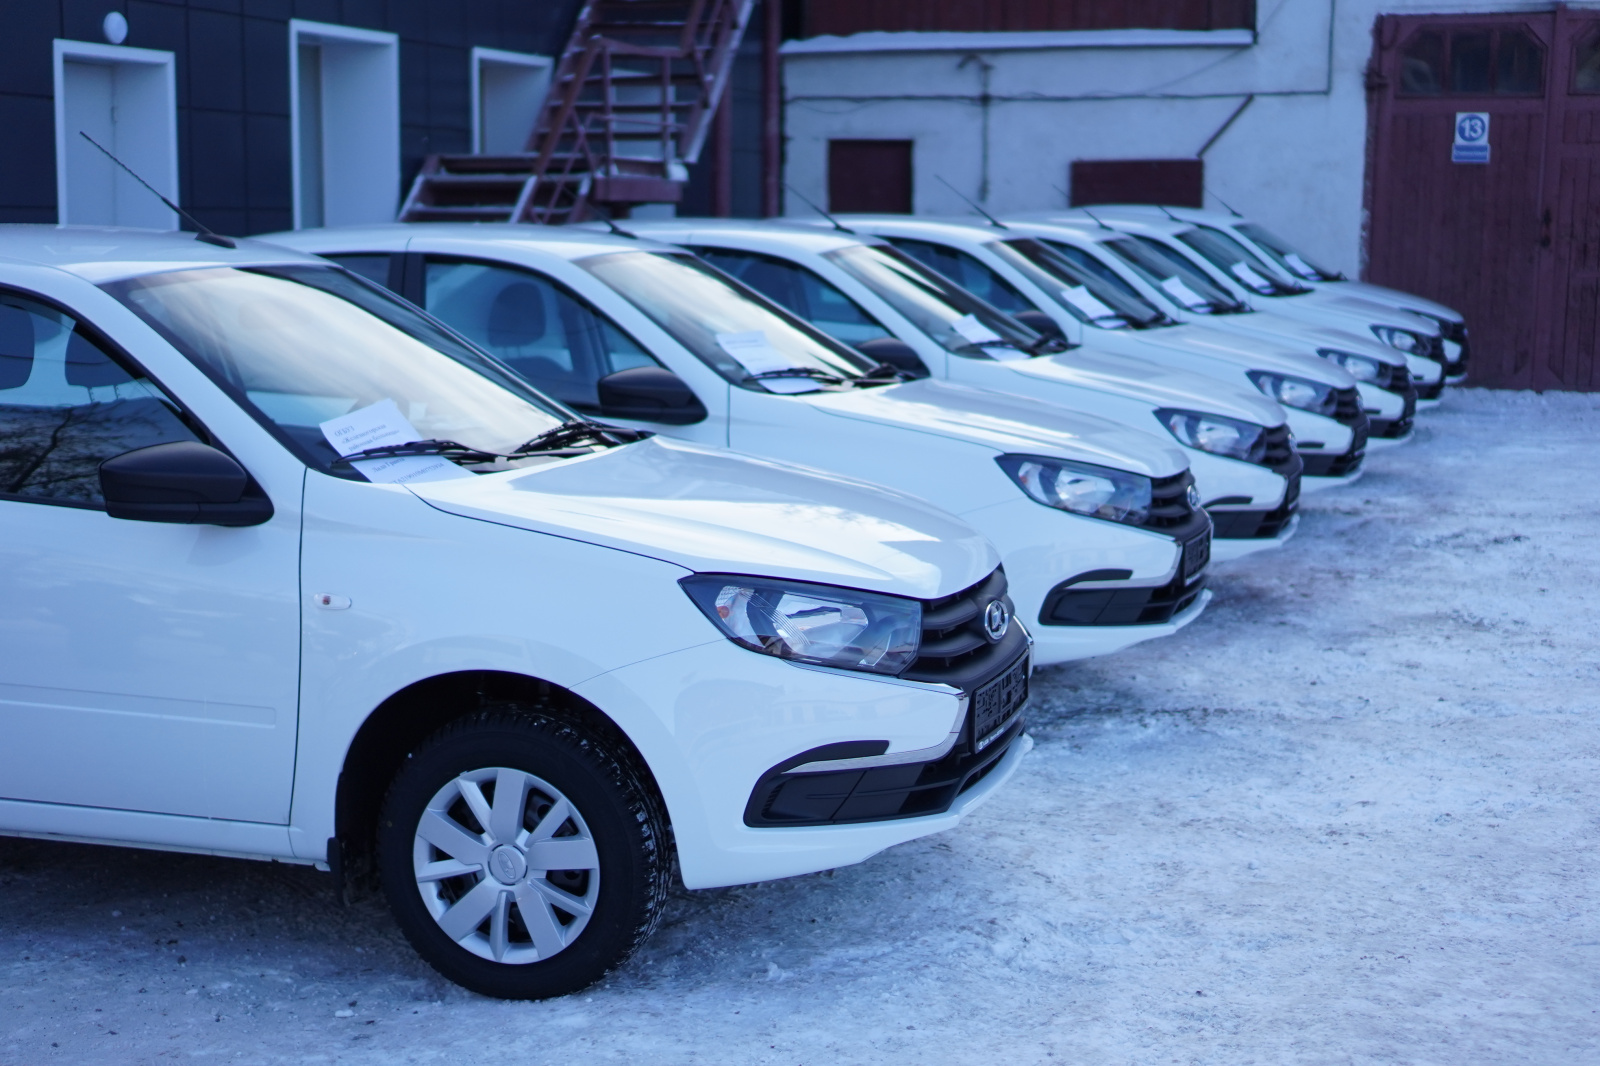 84 легковых автомобиля получили в этом году медорганизации Иркутской области